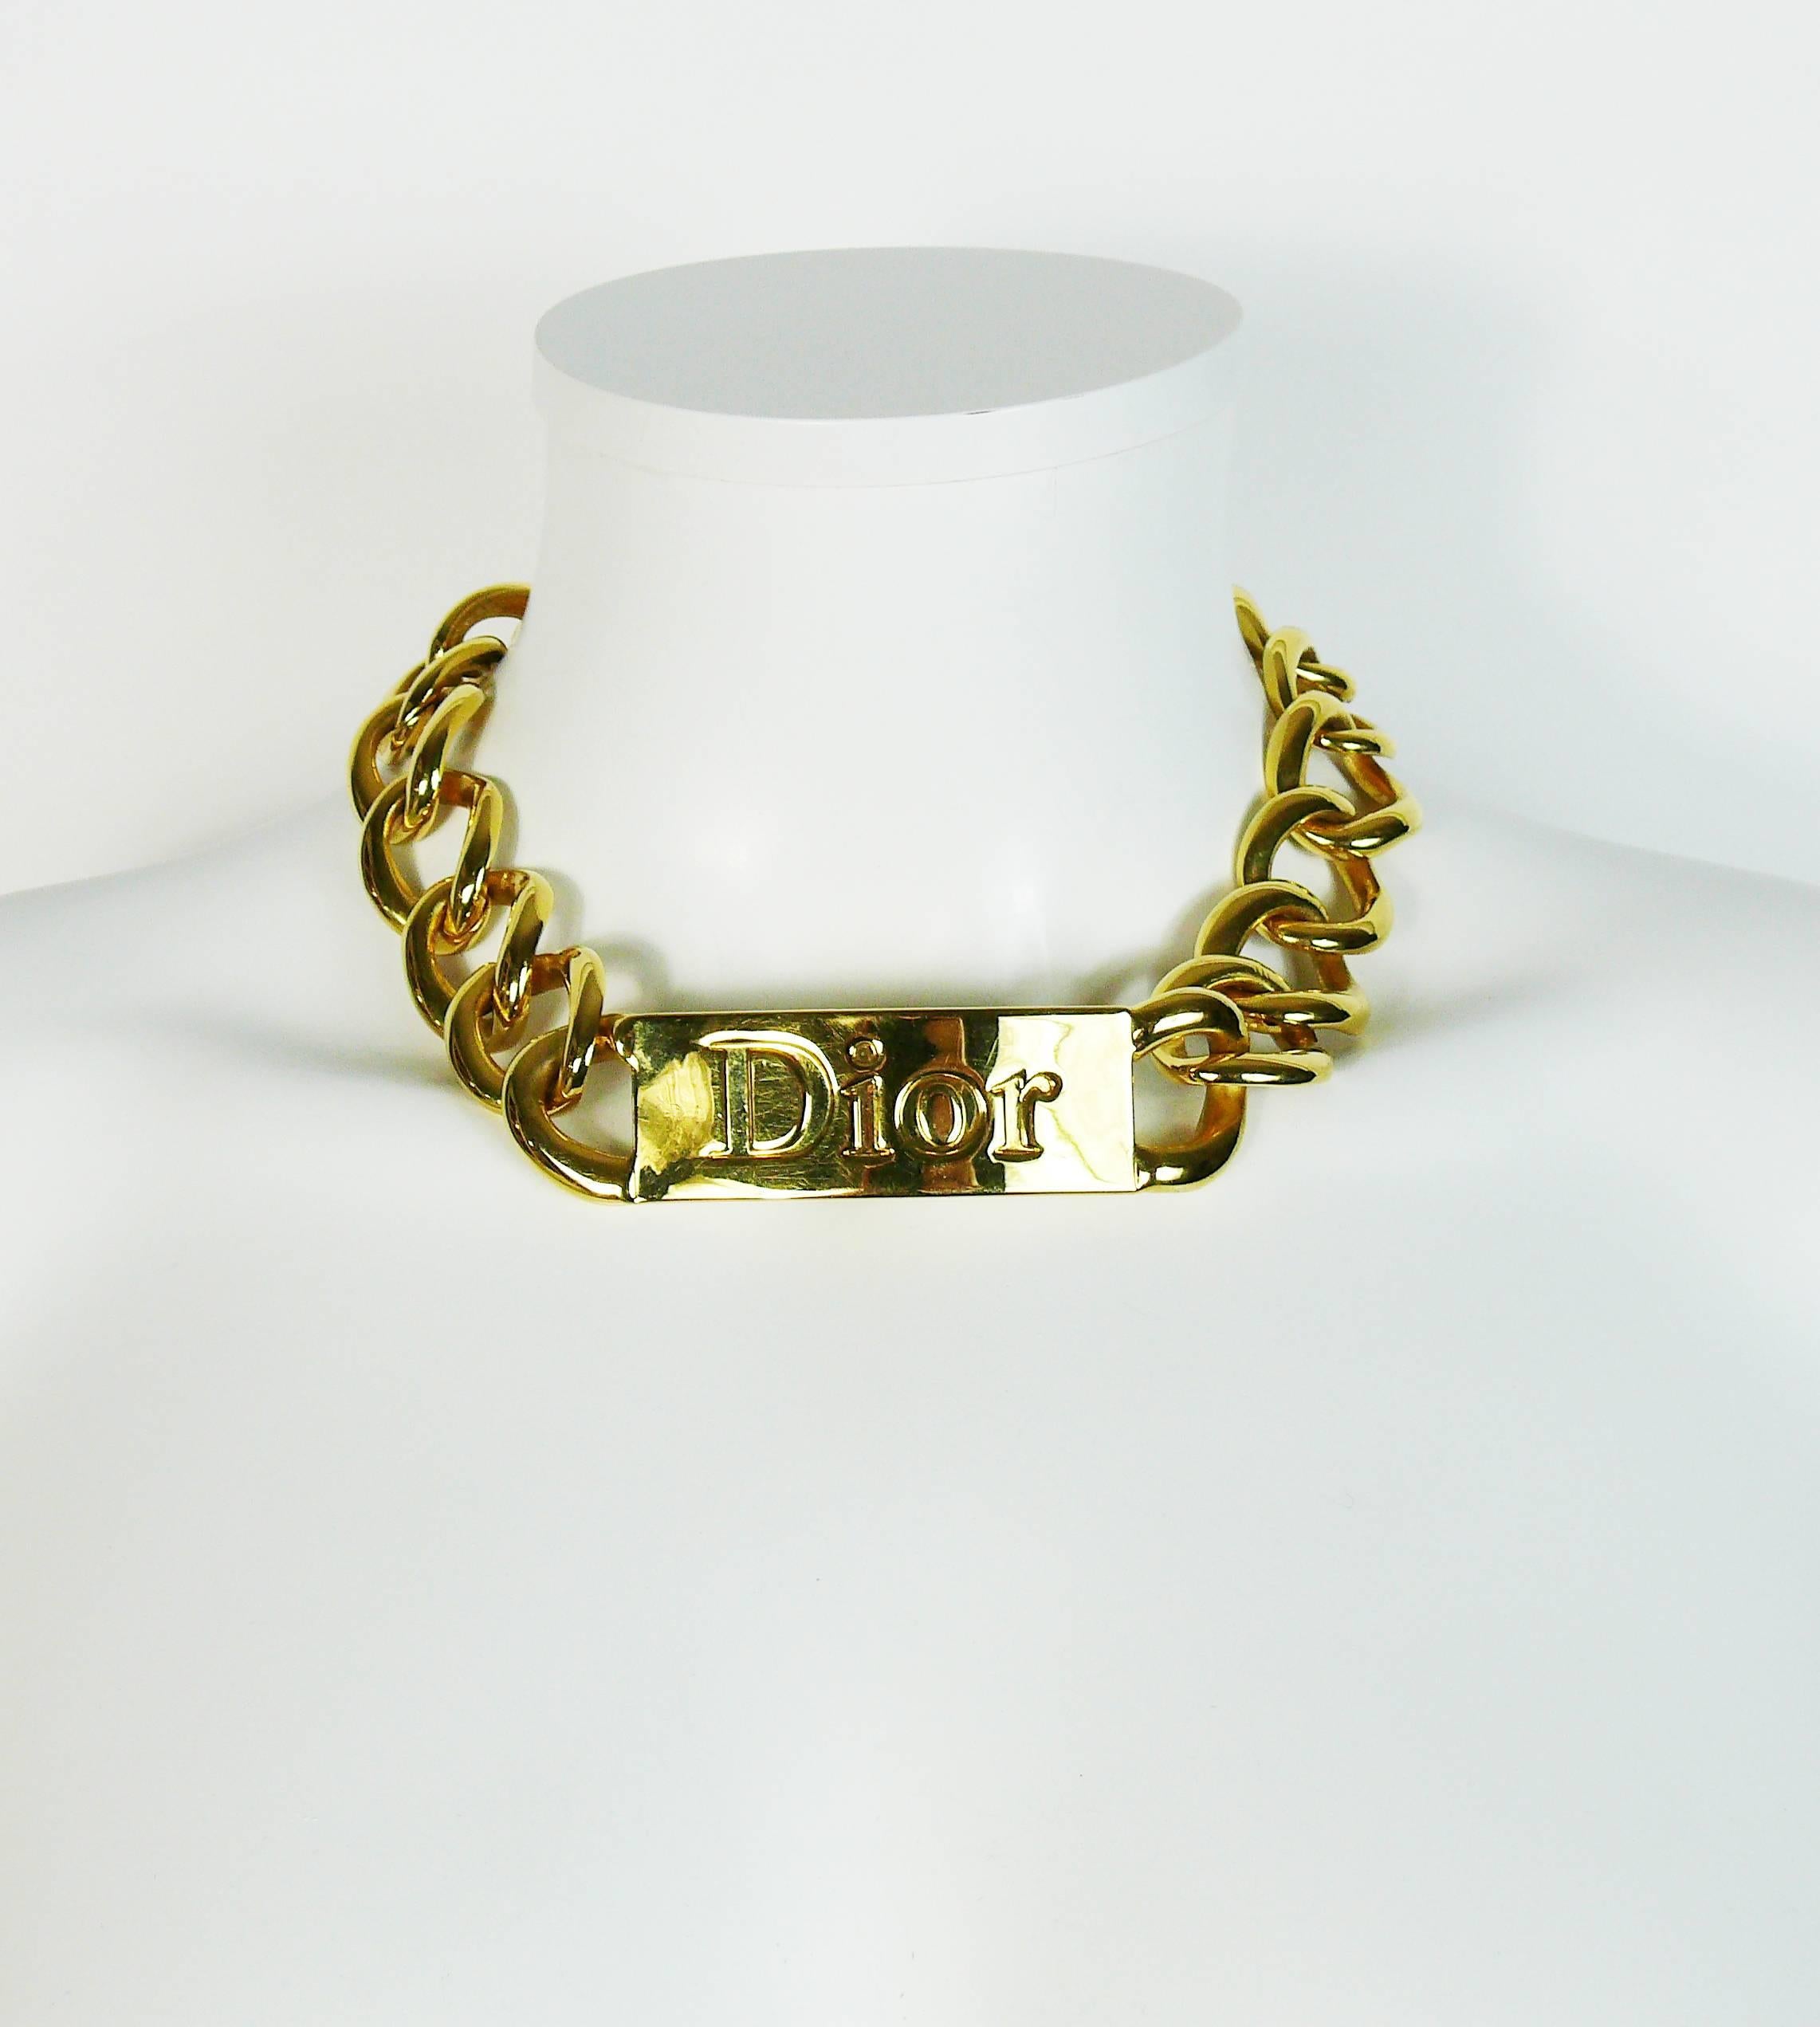 christian dior necklace and bracelet set